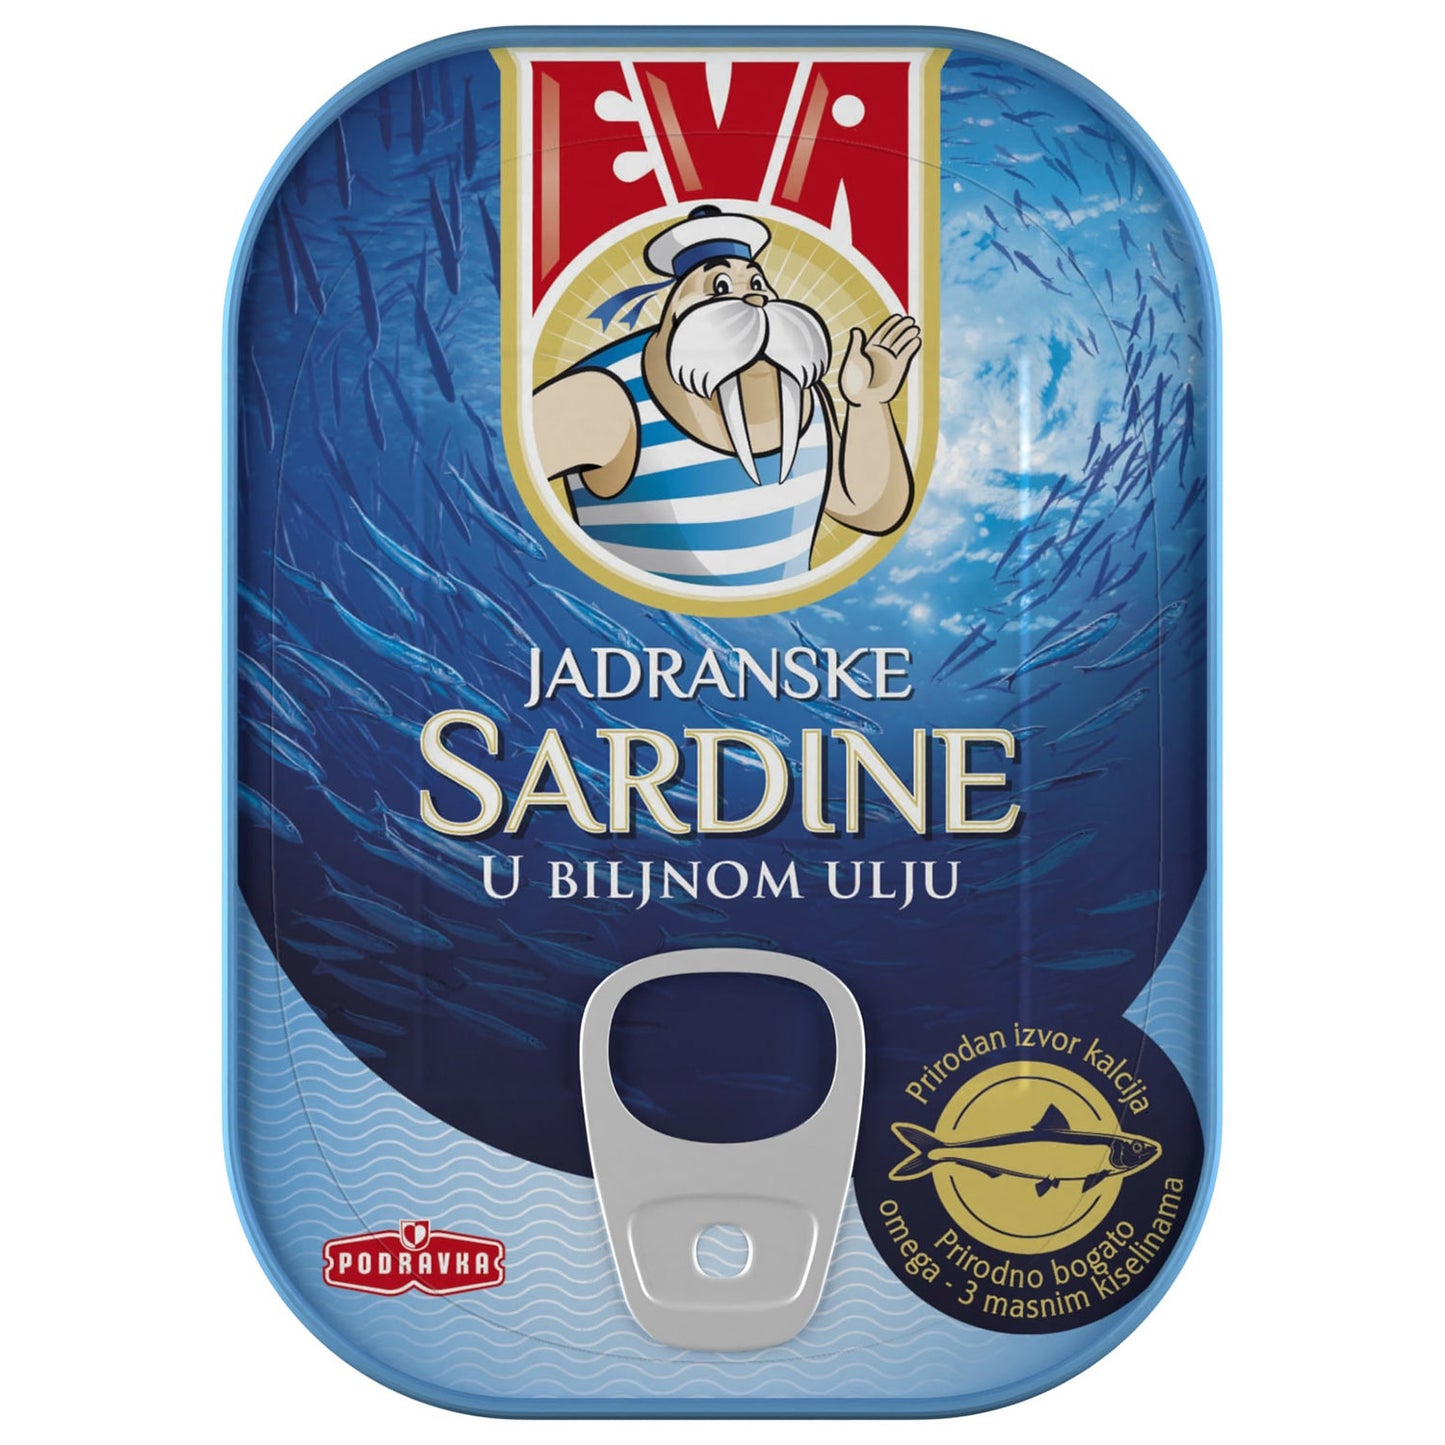 Eva Sardine u biljnom ulju - Sardiner i vegetabilisk olja 70g